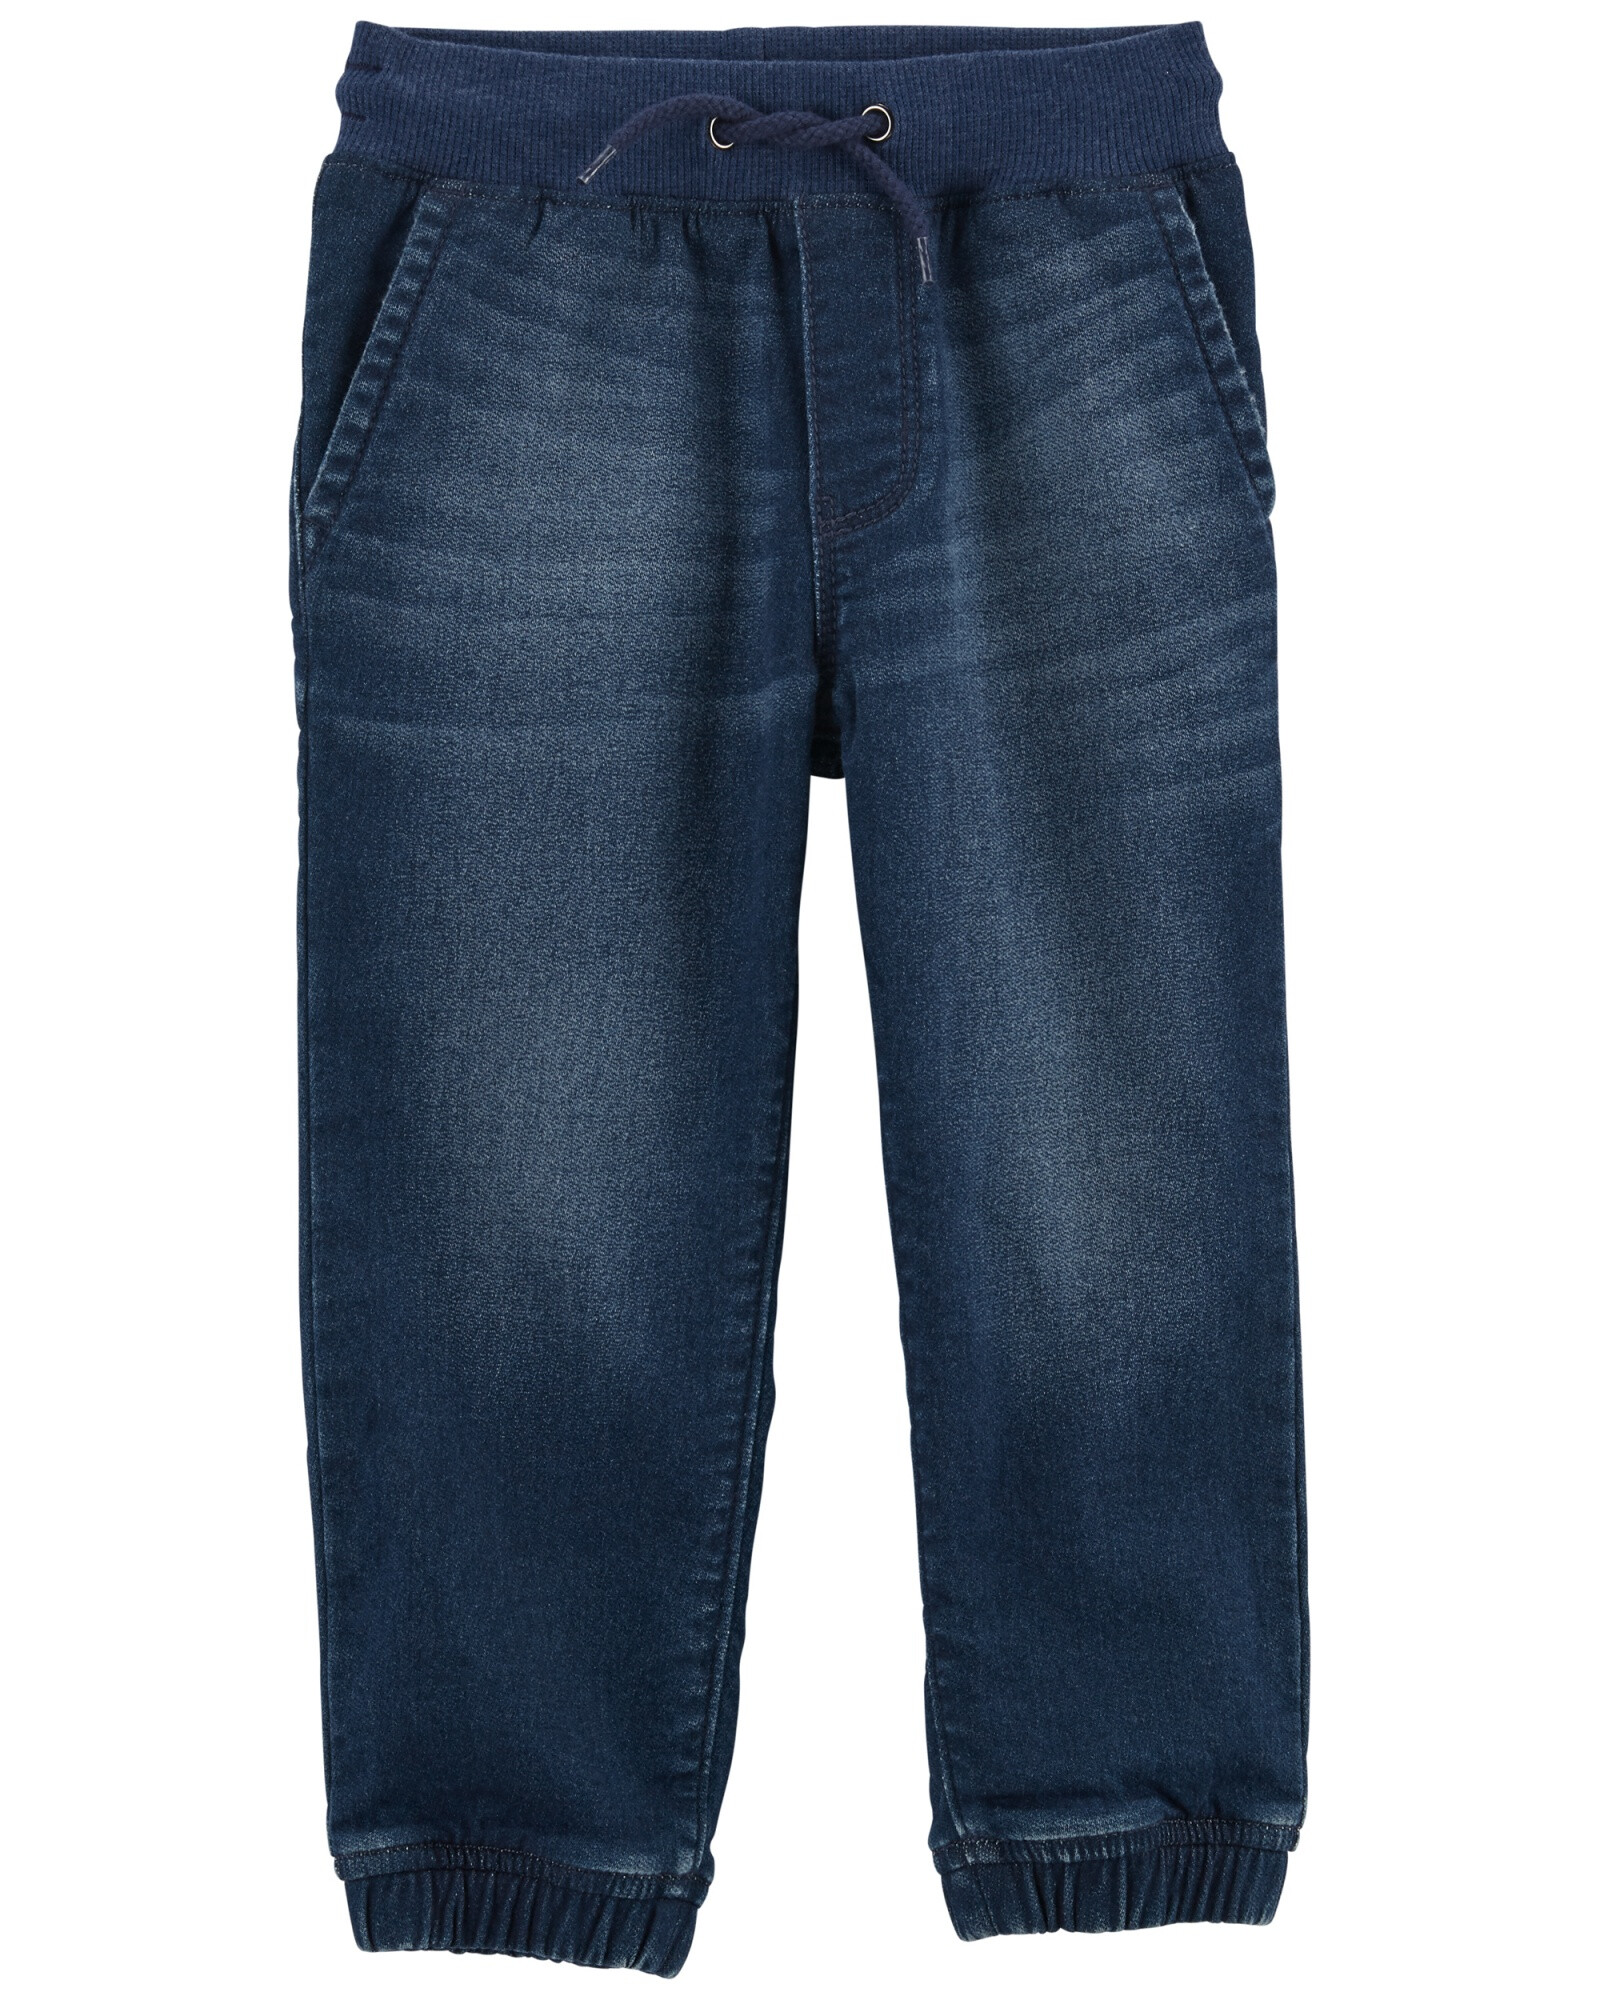 Pantalón de jean relajados estilo deportivo. Talles 2-5T Sin color